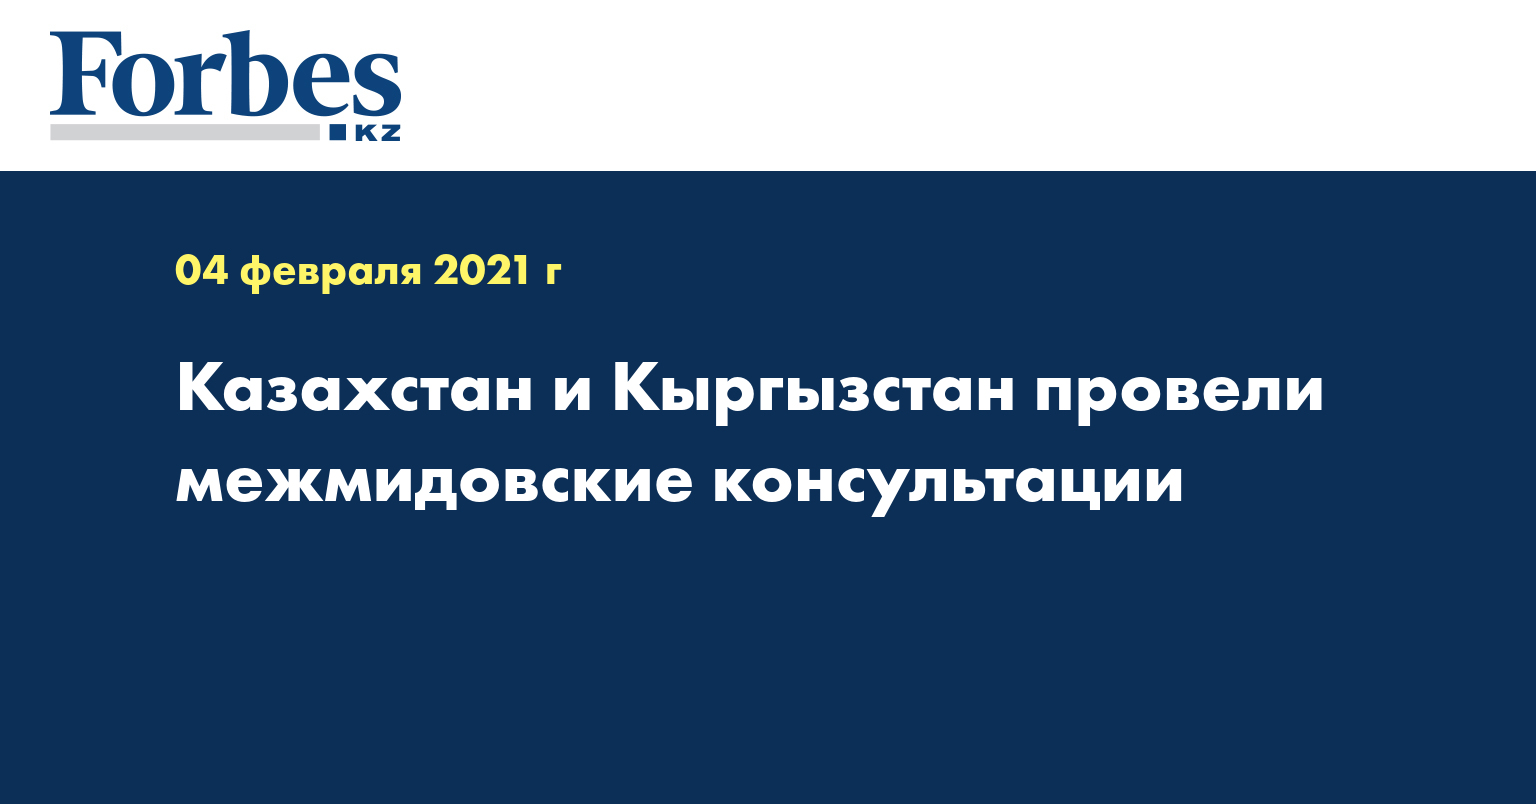 Казахстан и Кыргызстан провели межмидовские консультации